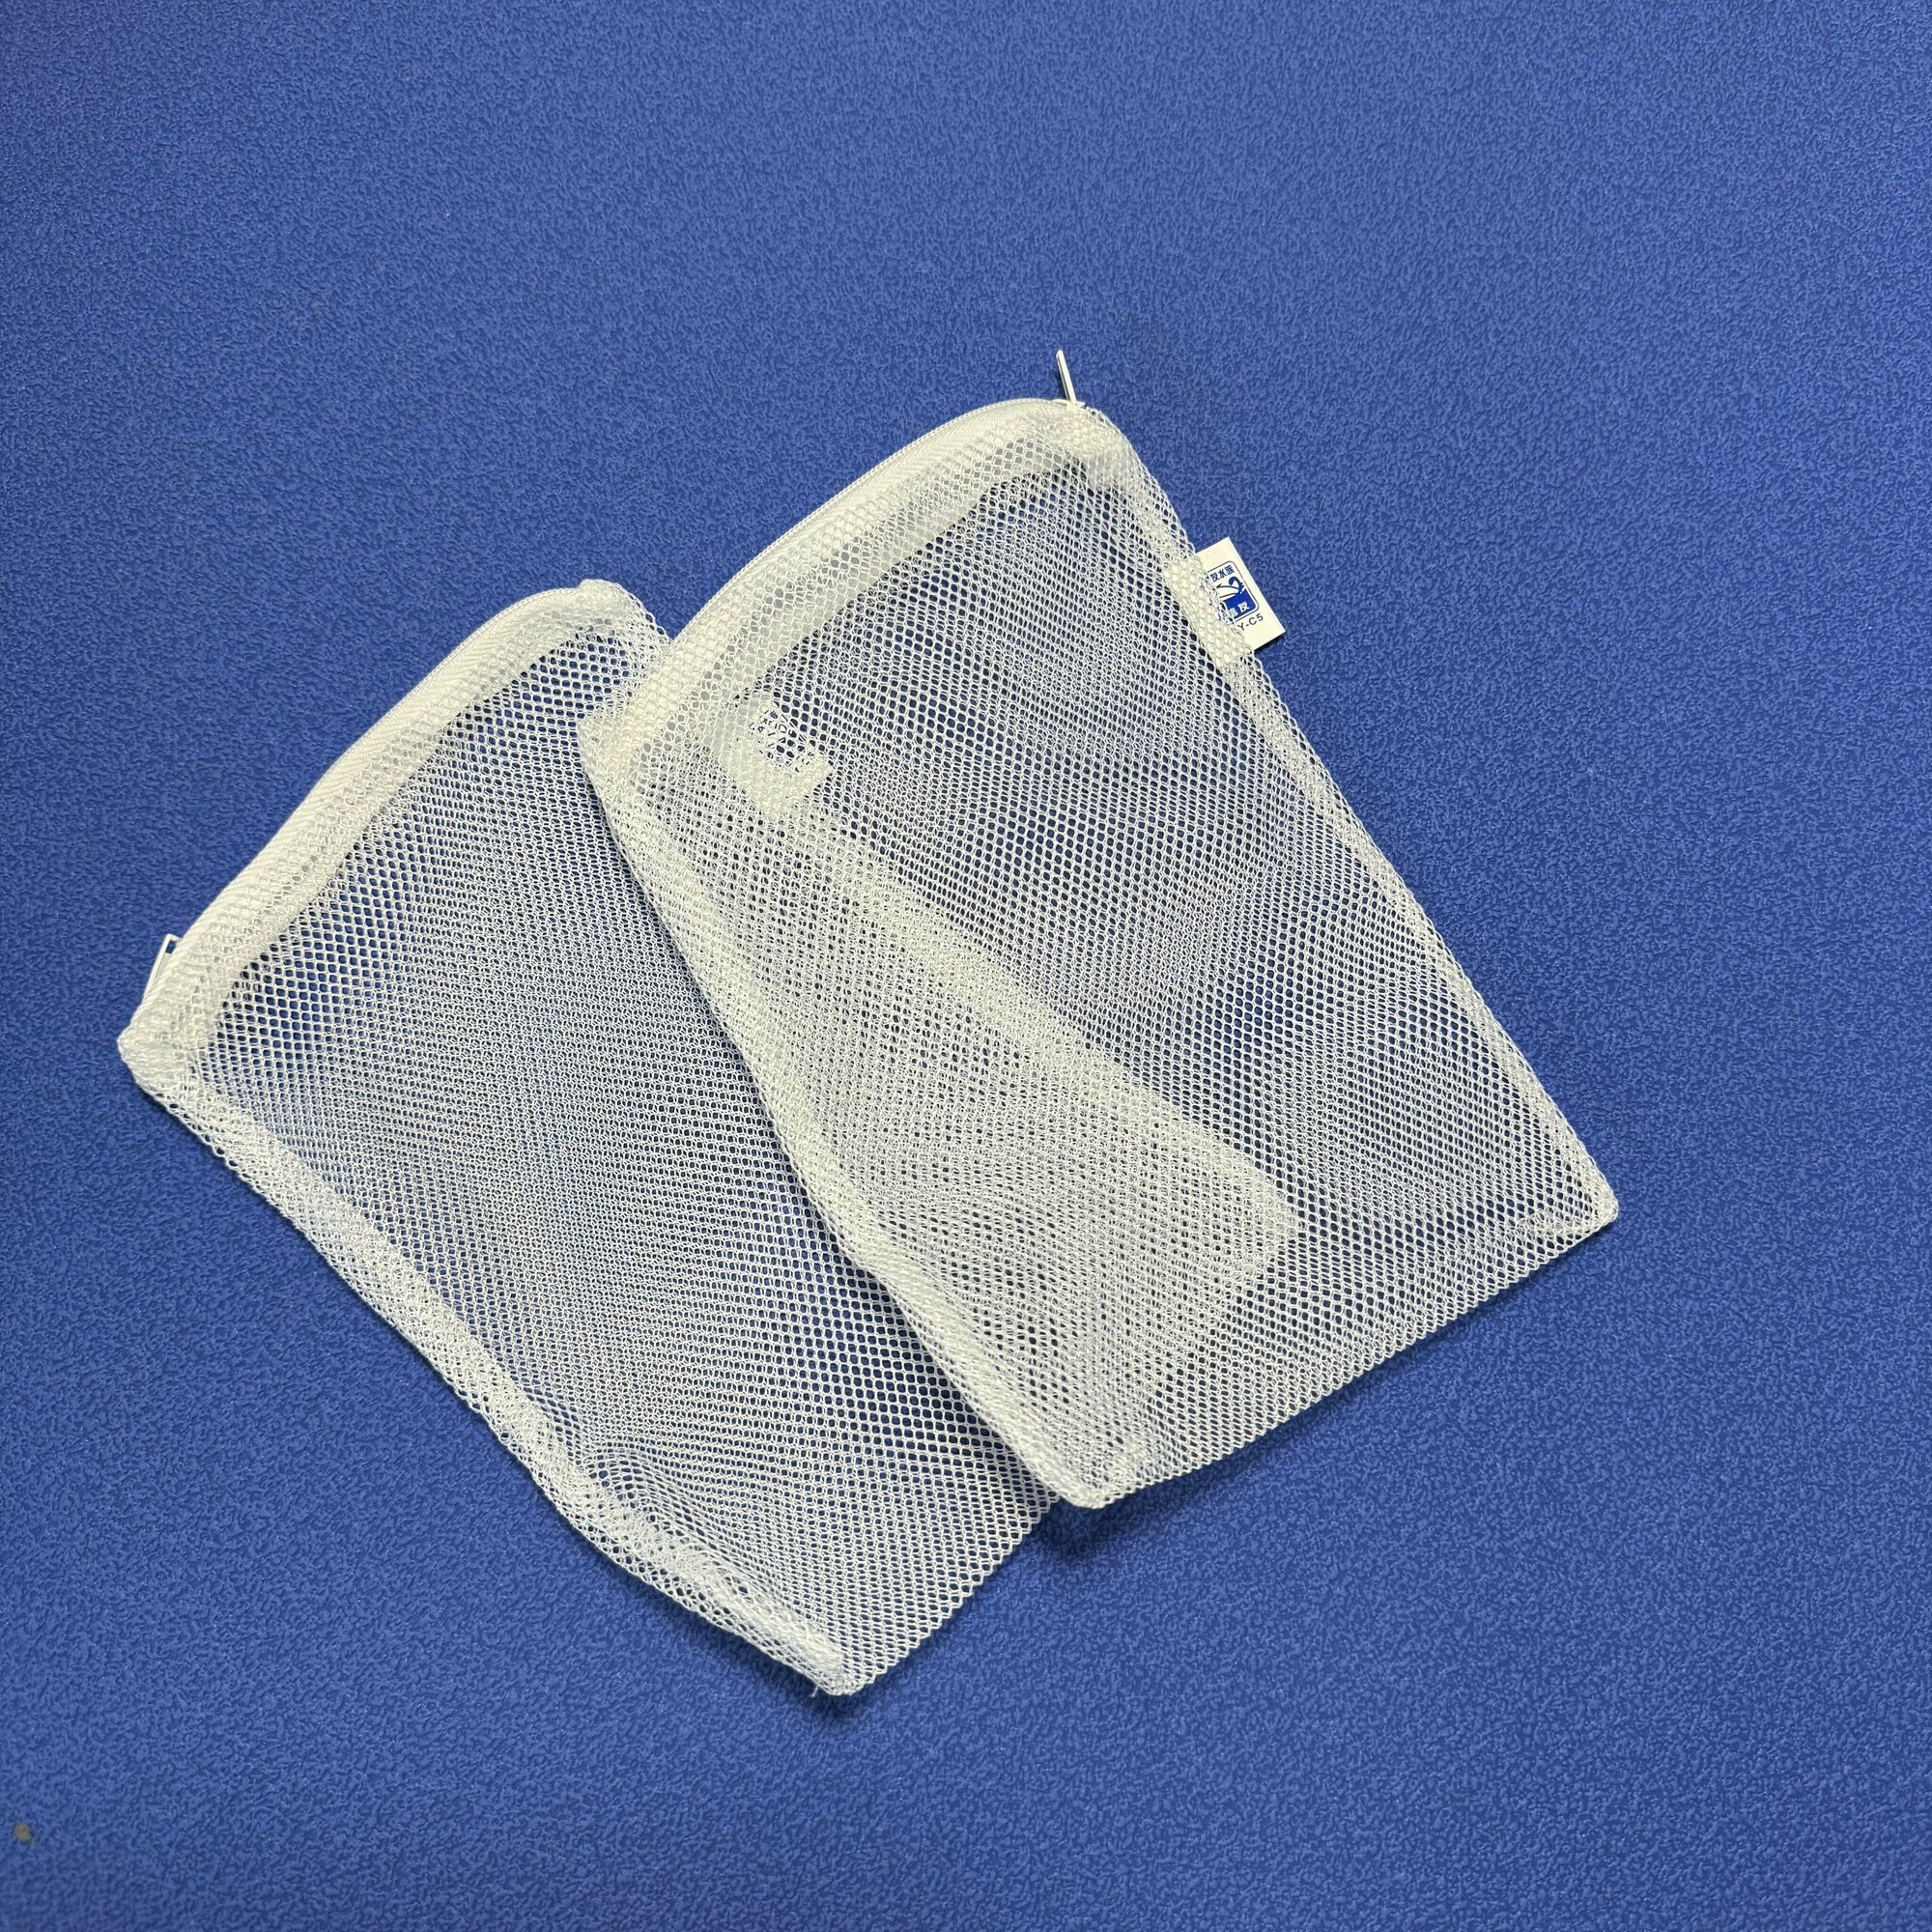 Сетчатые мешки 2шт, размер 15см х 20 см. на молнии для сыпучих наполнителей аквариумного фильтра